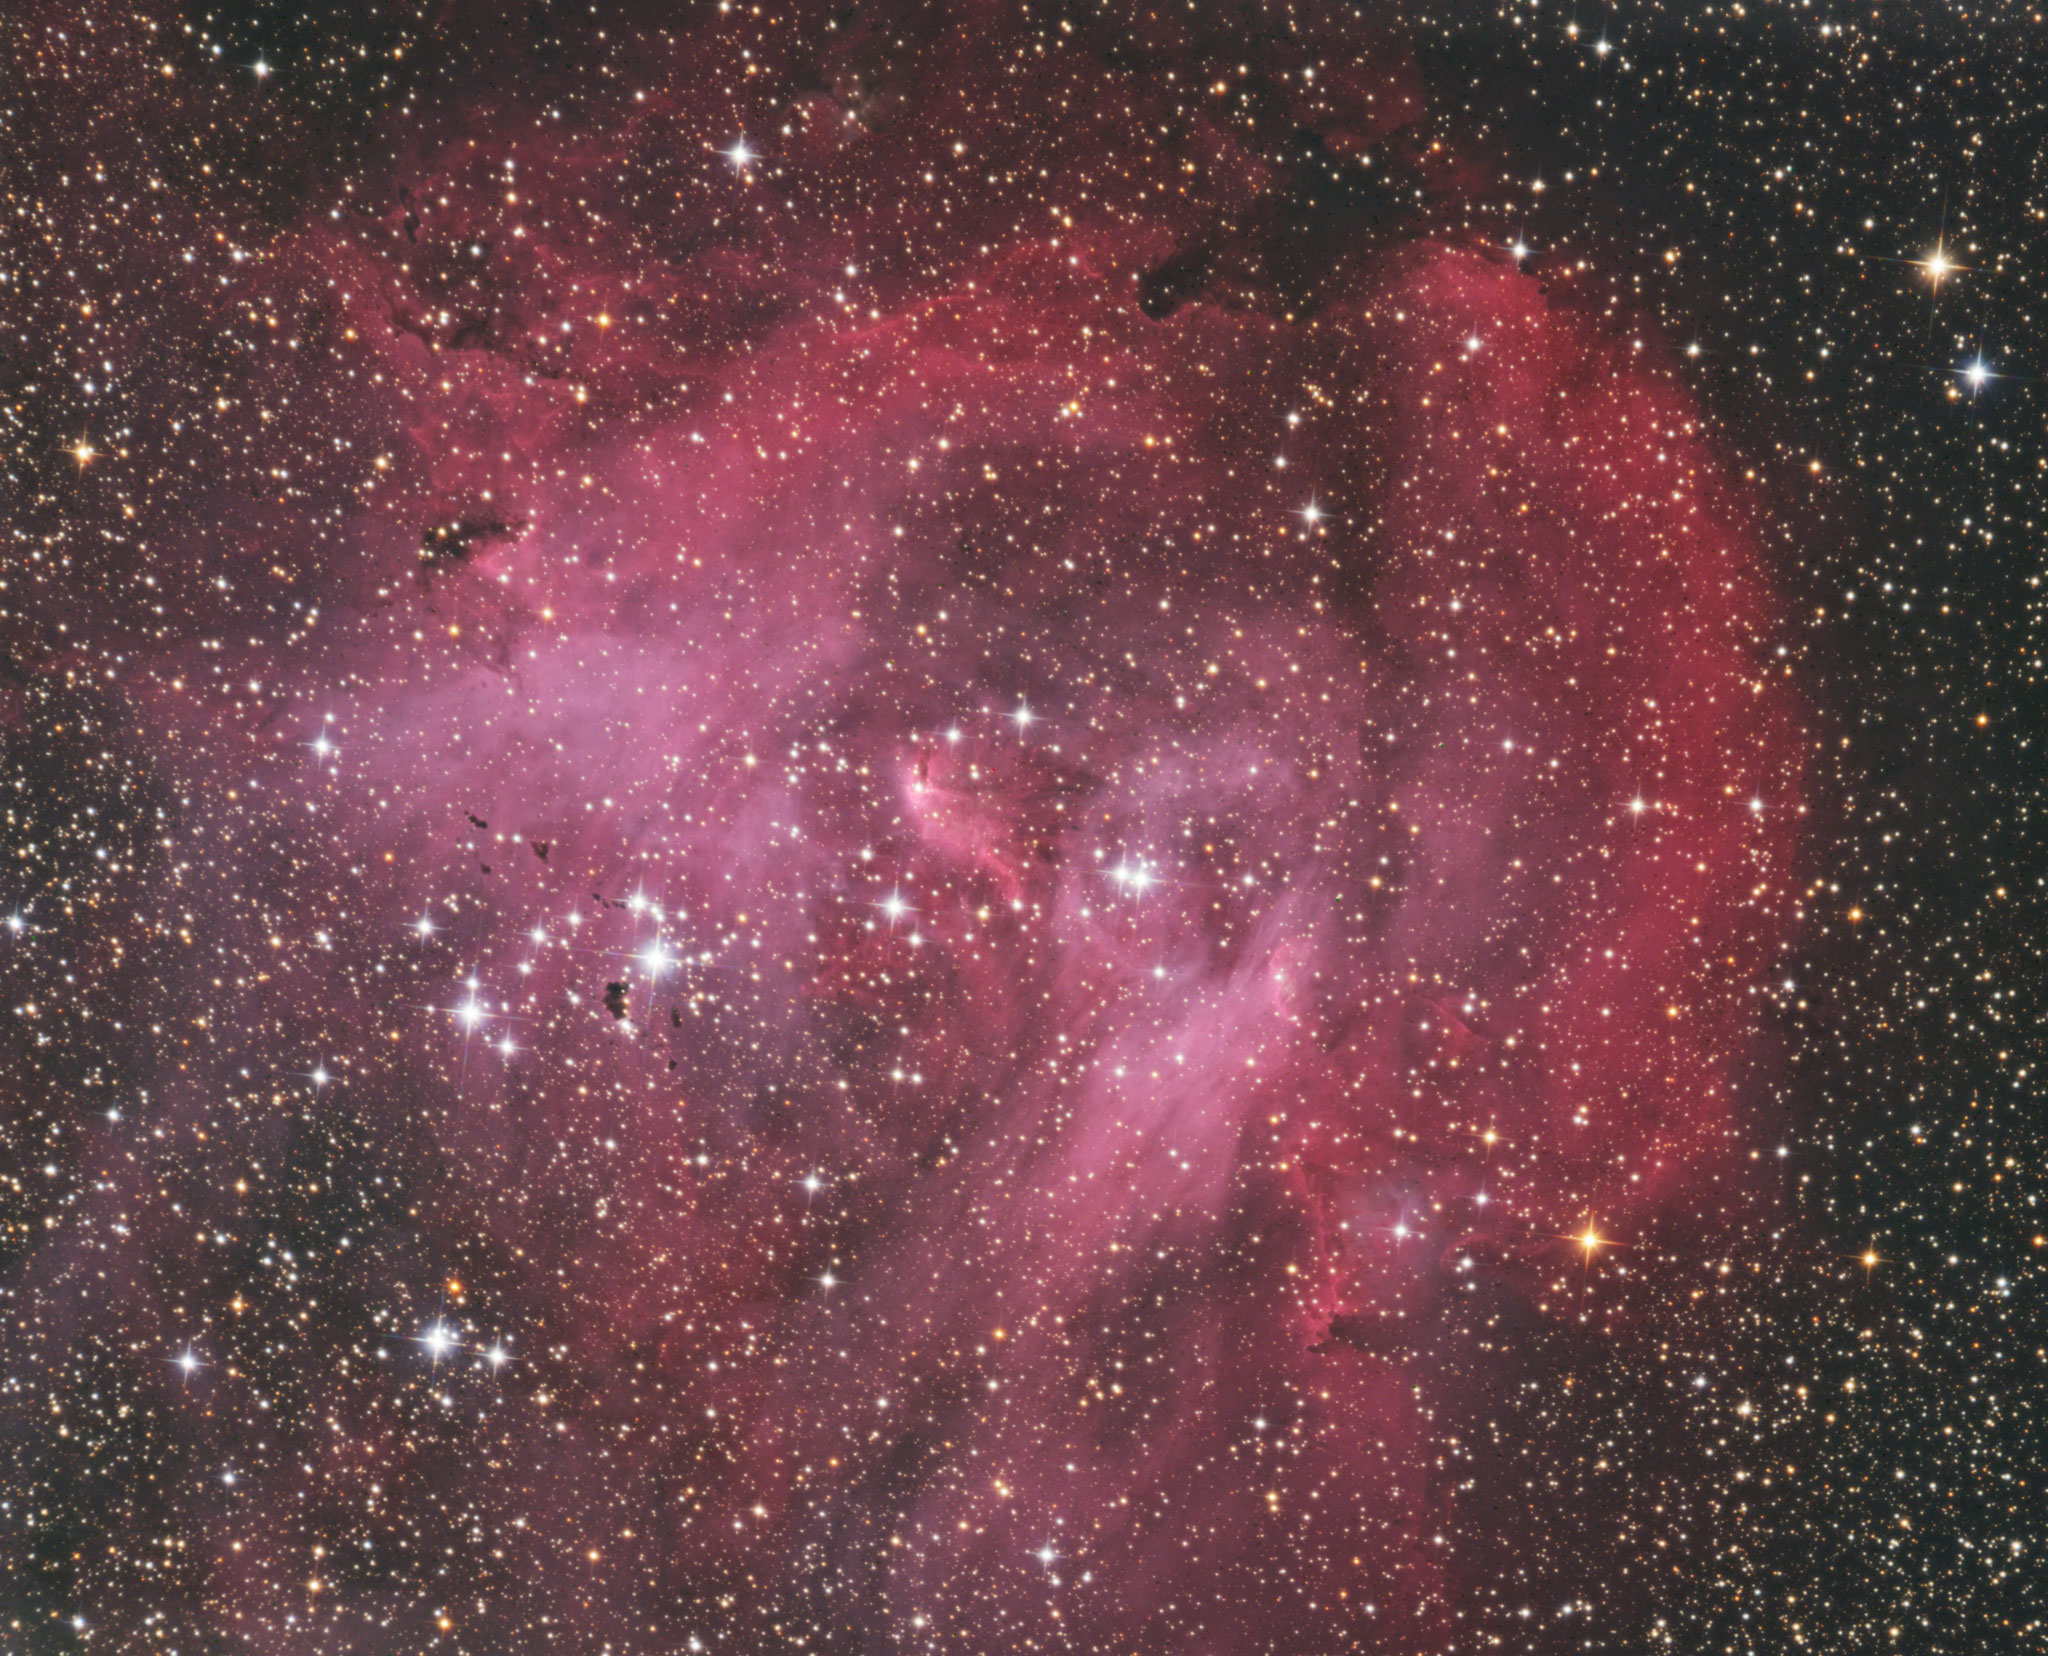 IC2944, nébuleuse à émission associé à un amas ouvert, constellation du Centaure, T355 Chili, mars 2018